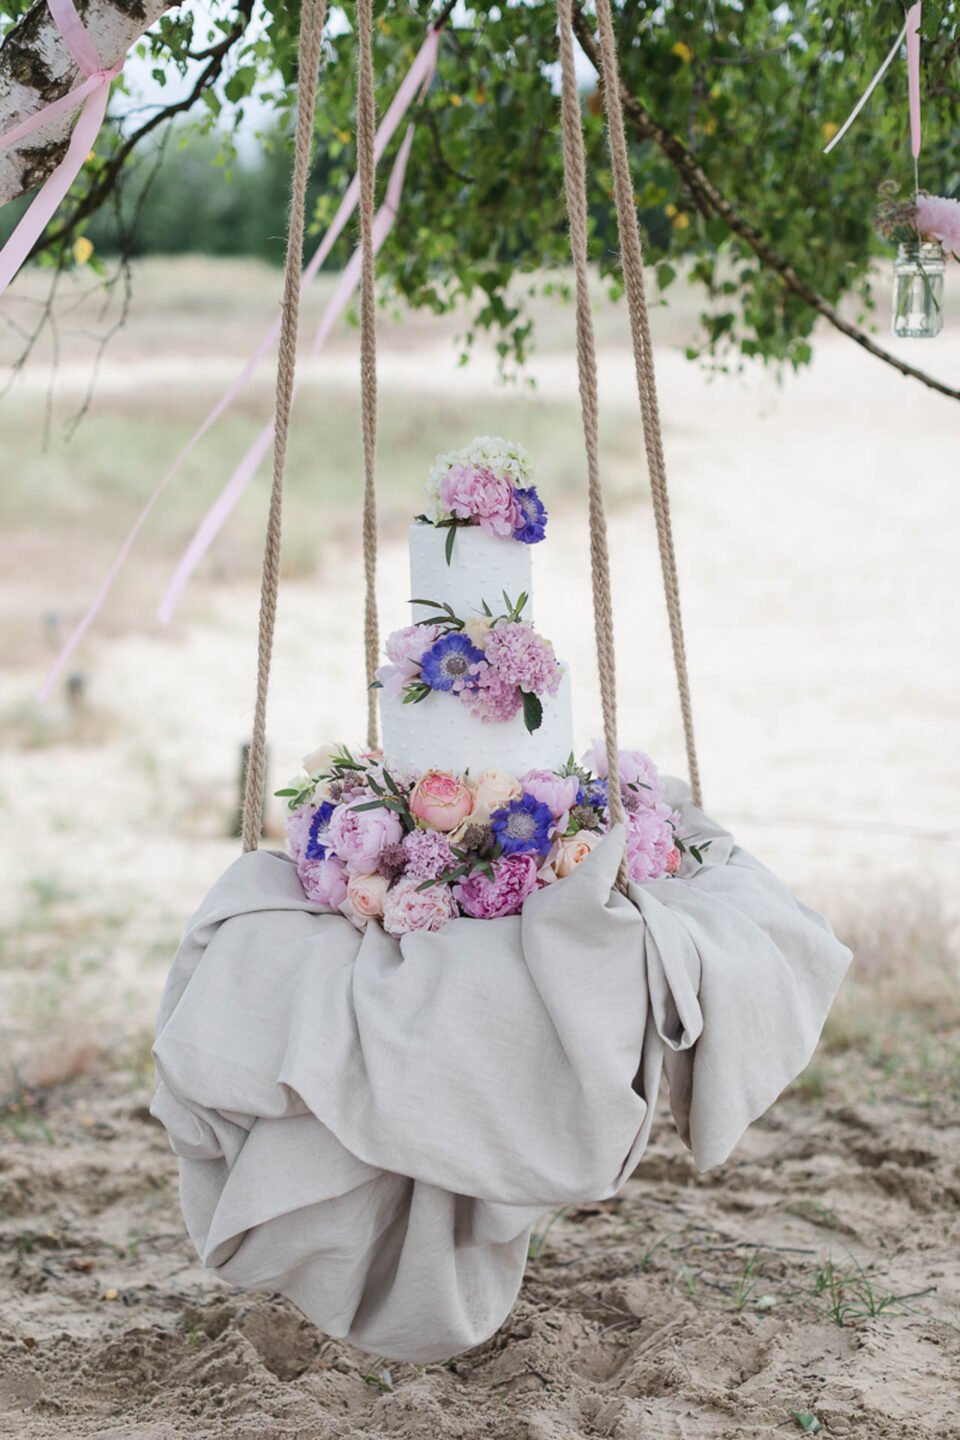 Dreistöckige Hochzeitstorte mit Blumen auf einer Schaukel